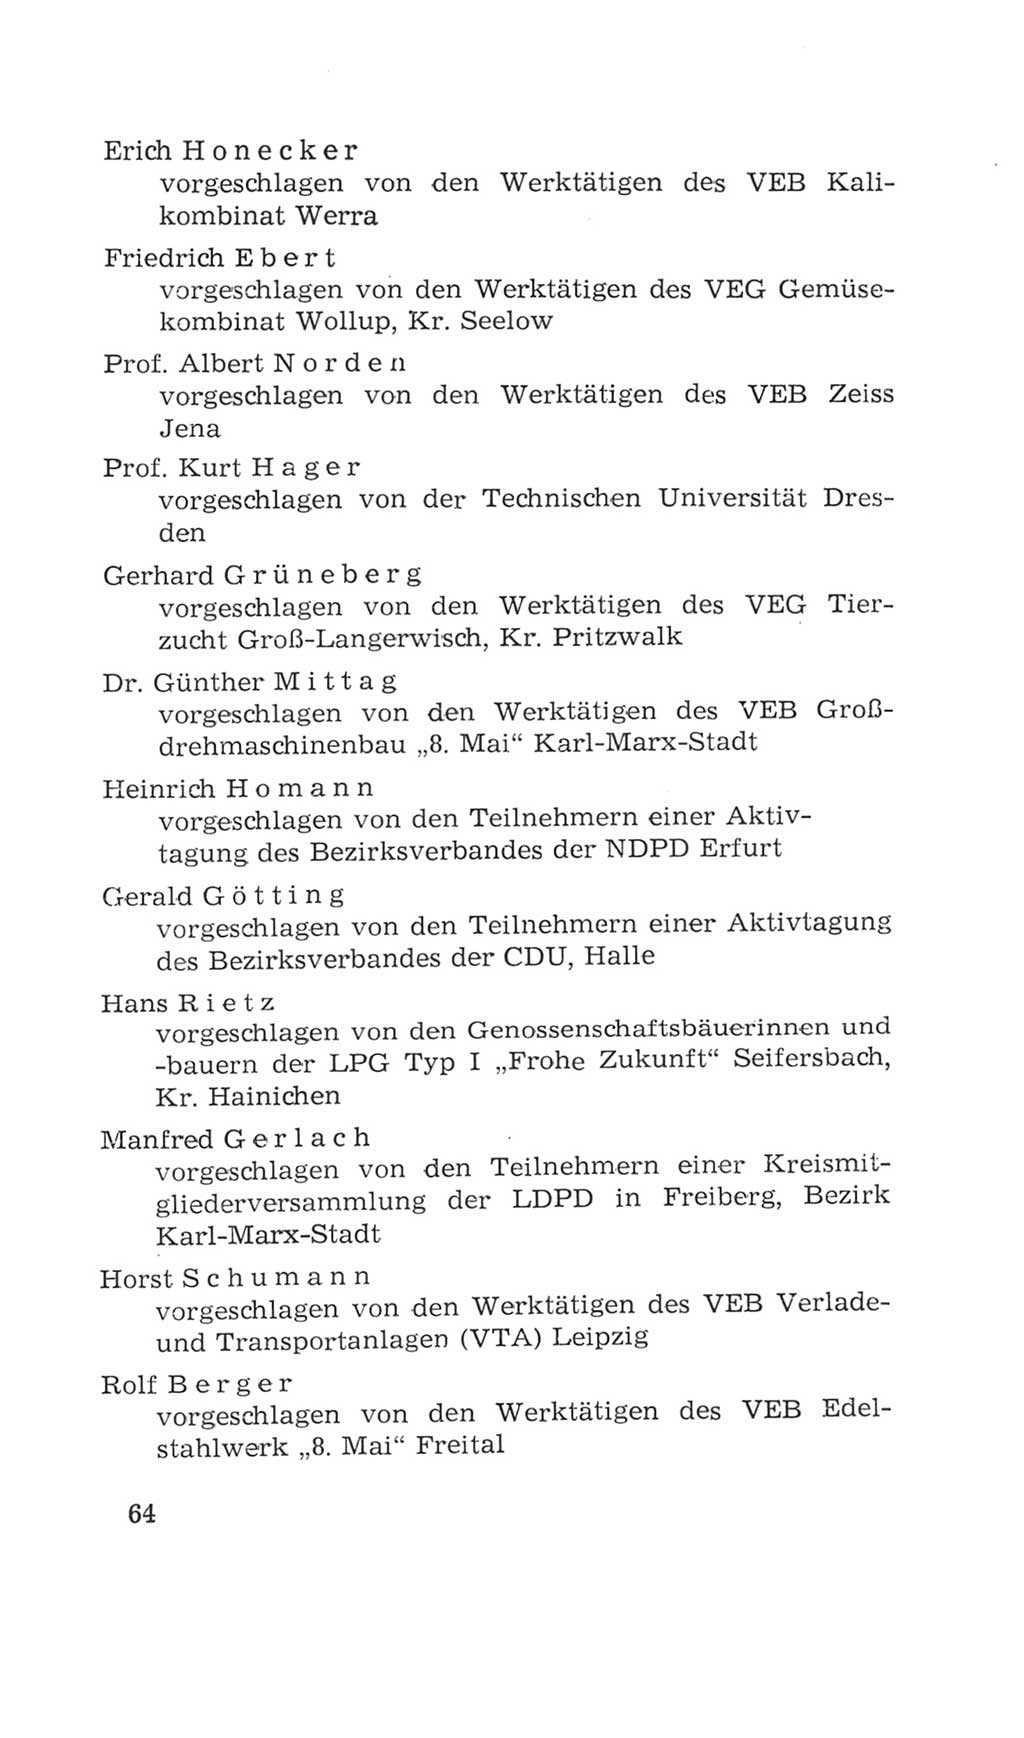 Volkskammer (VK) der Deutschen Demokratischen Republik (DDR), 4. Wahlperiode 1963-1967, Seite 64 (VK. DDR 4. WP. 1963-1967, S. 64)